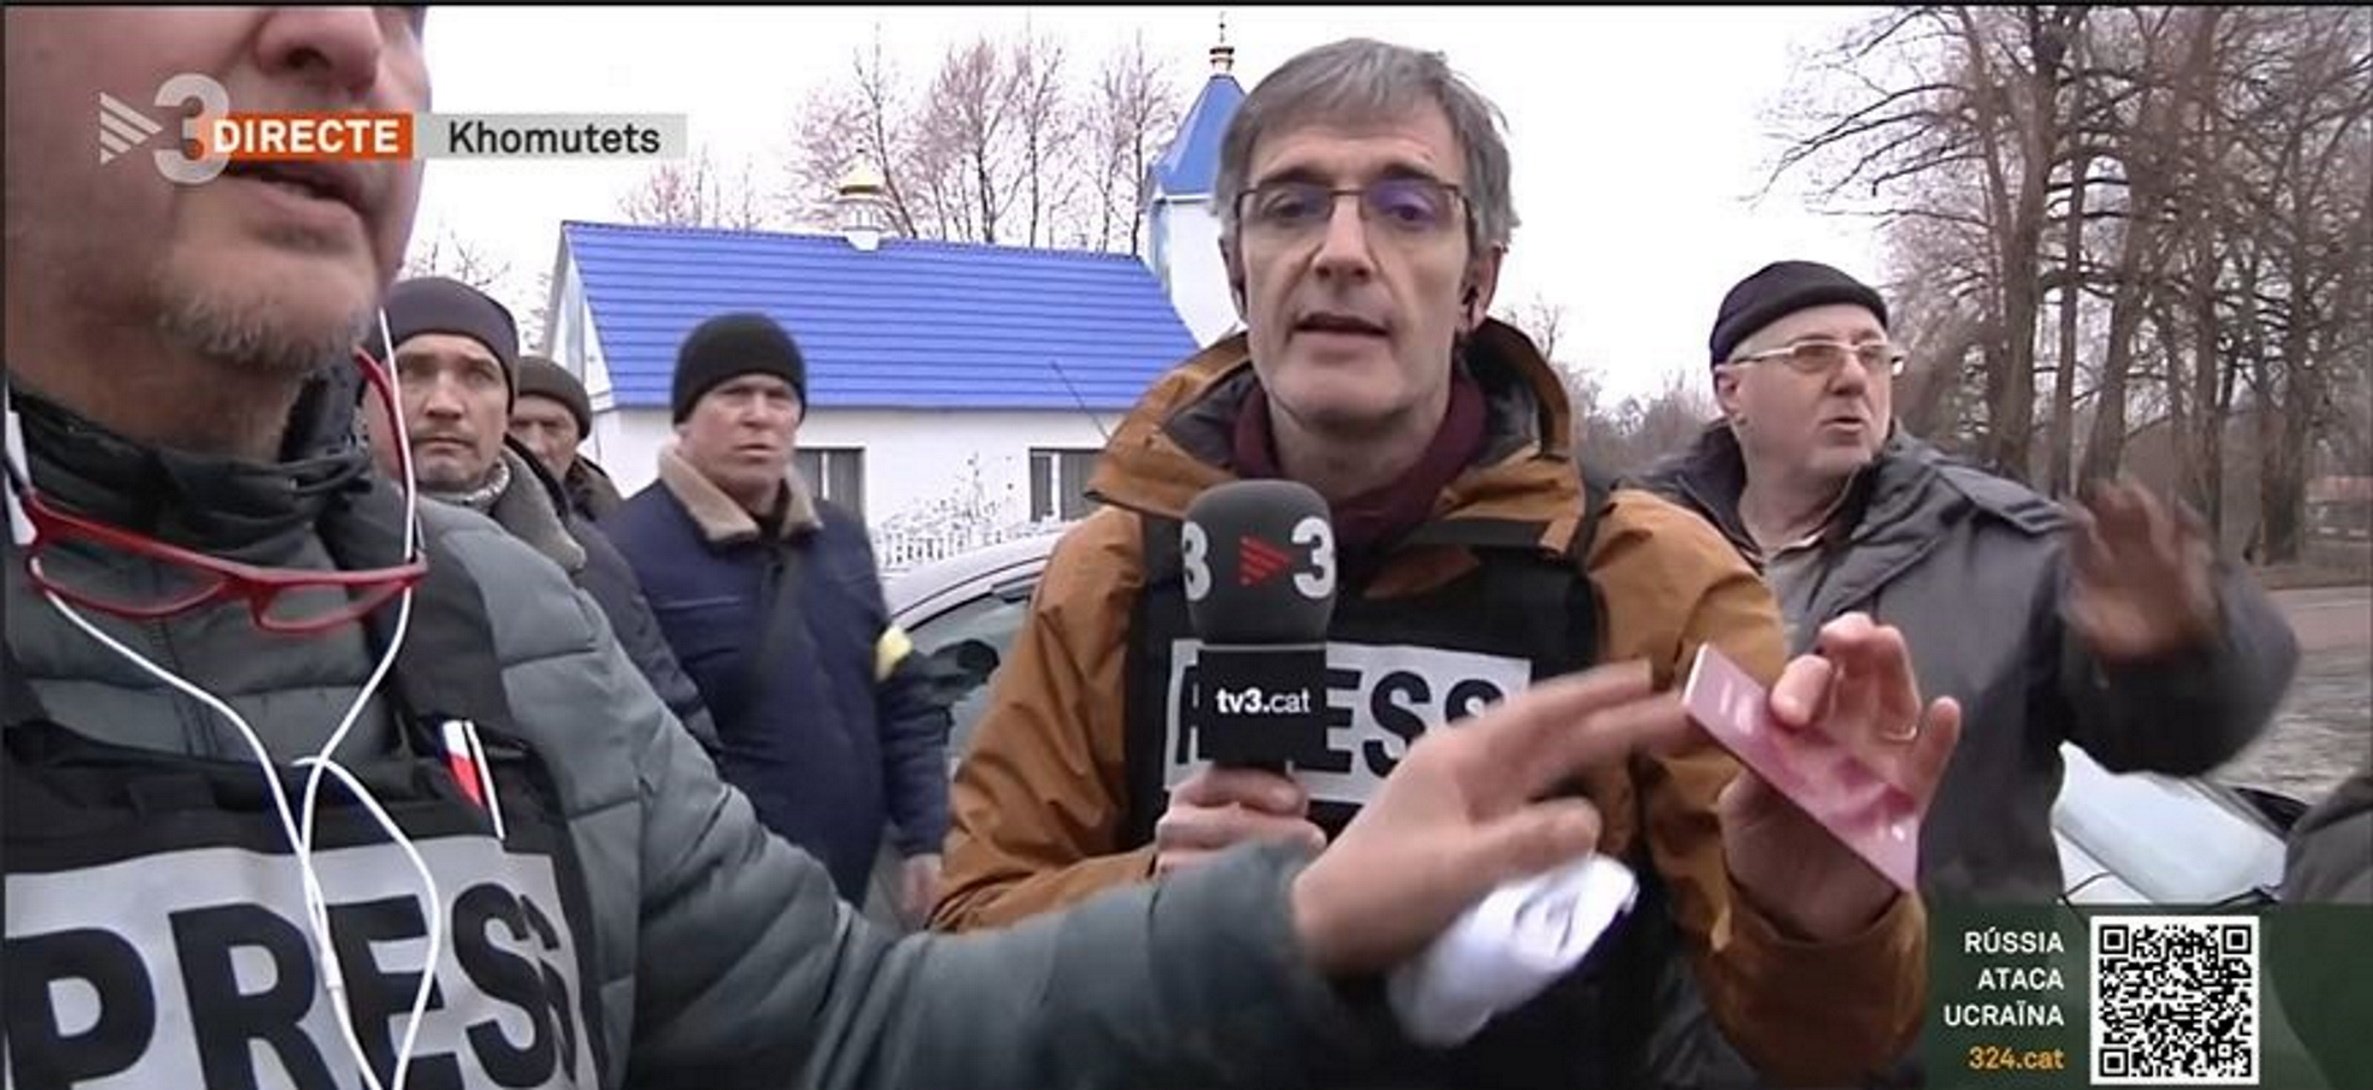 Ucrania: Obligan a cortar la conexión en directo al enviado de TV3 Lluís Caelles